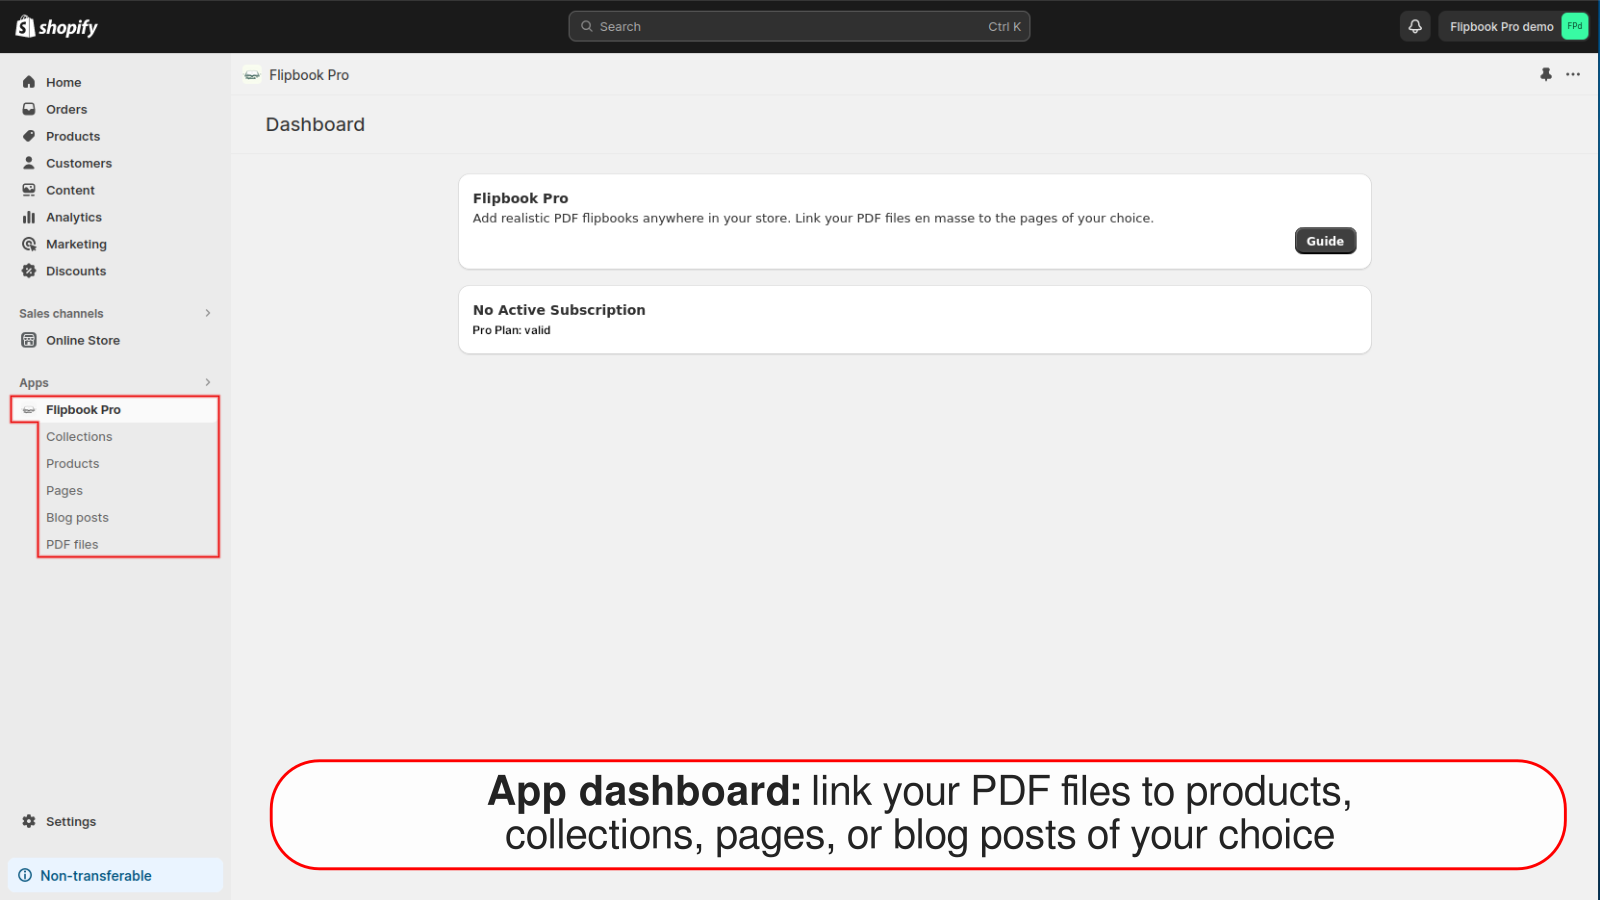 Panel de la aplicación: vincula PDF a productos, colecciones, páginas o blogs